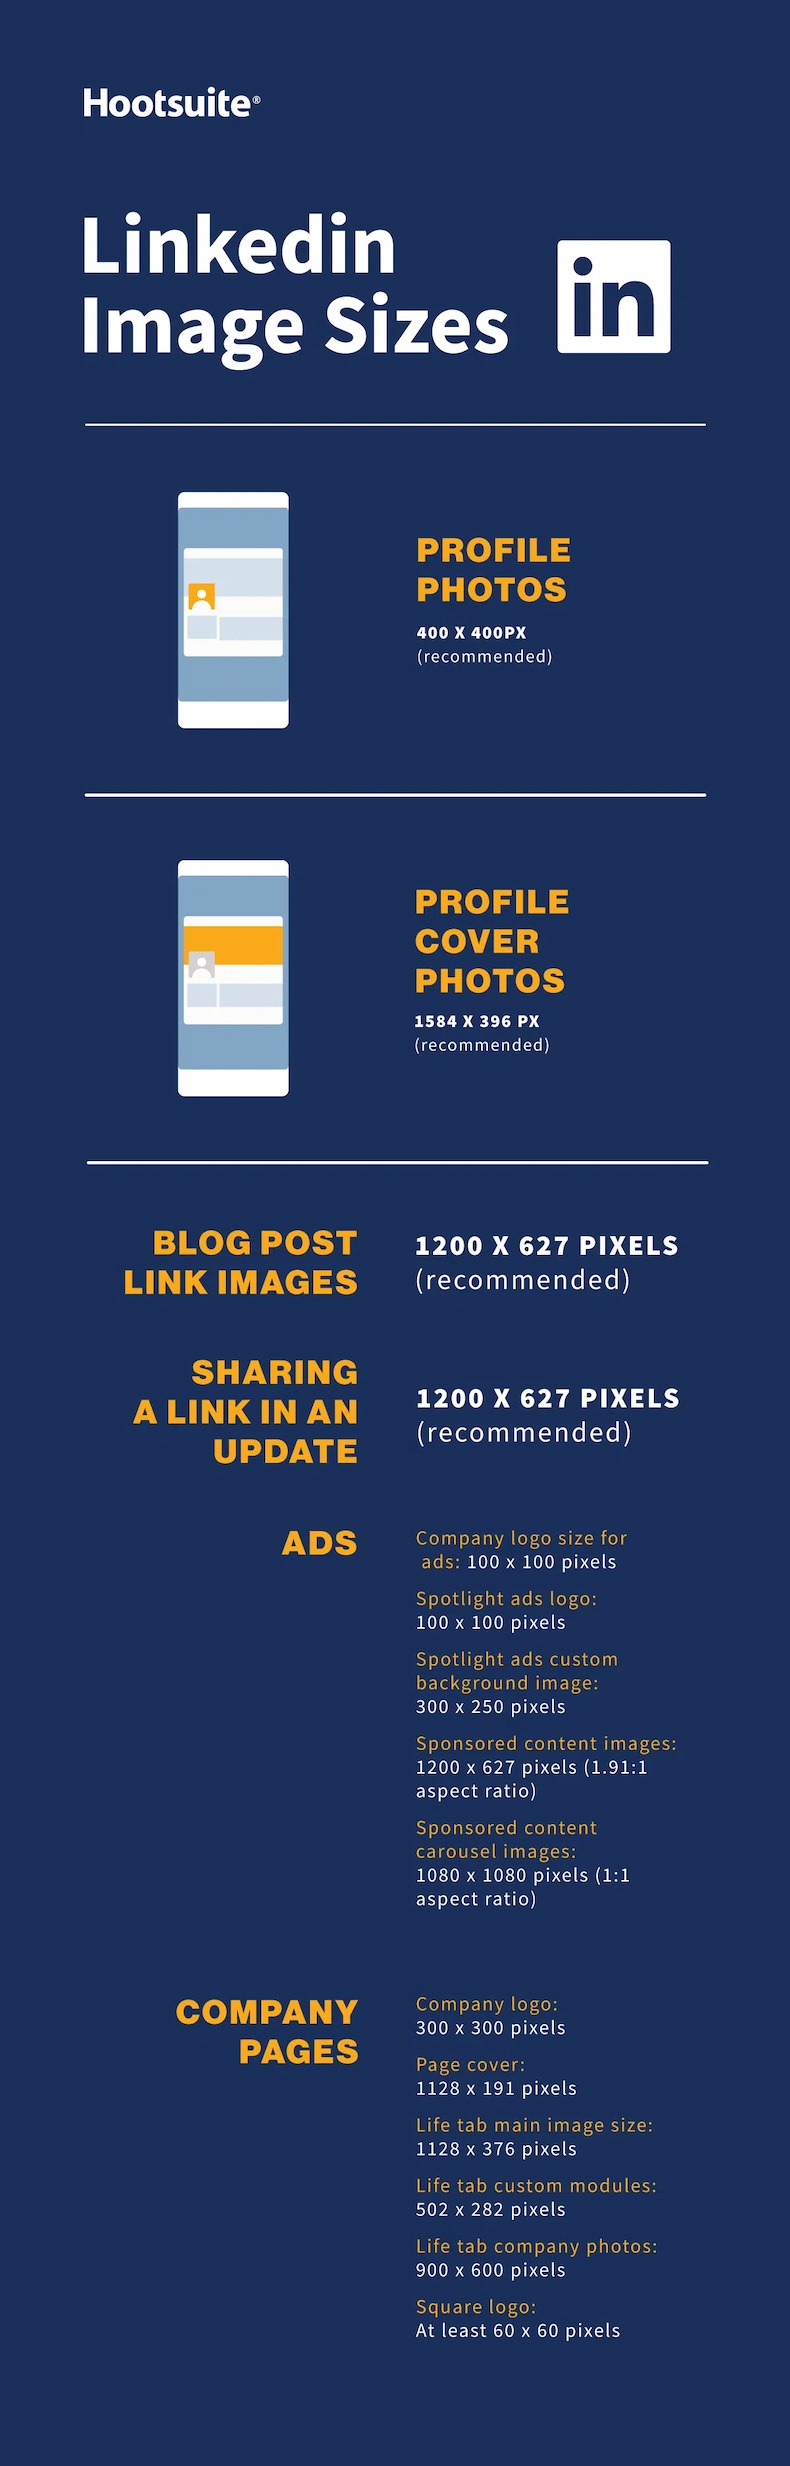 LinkedIn image sizes infographic